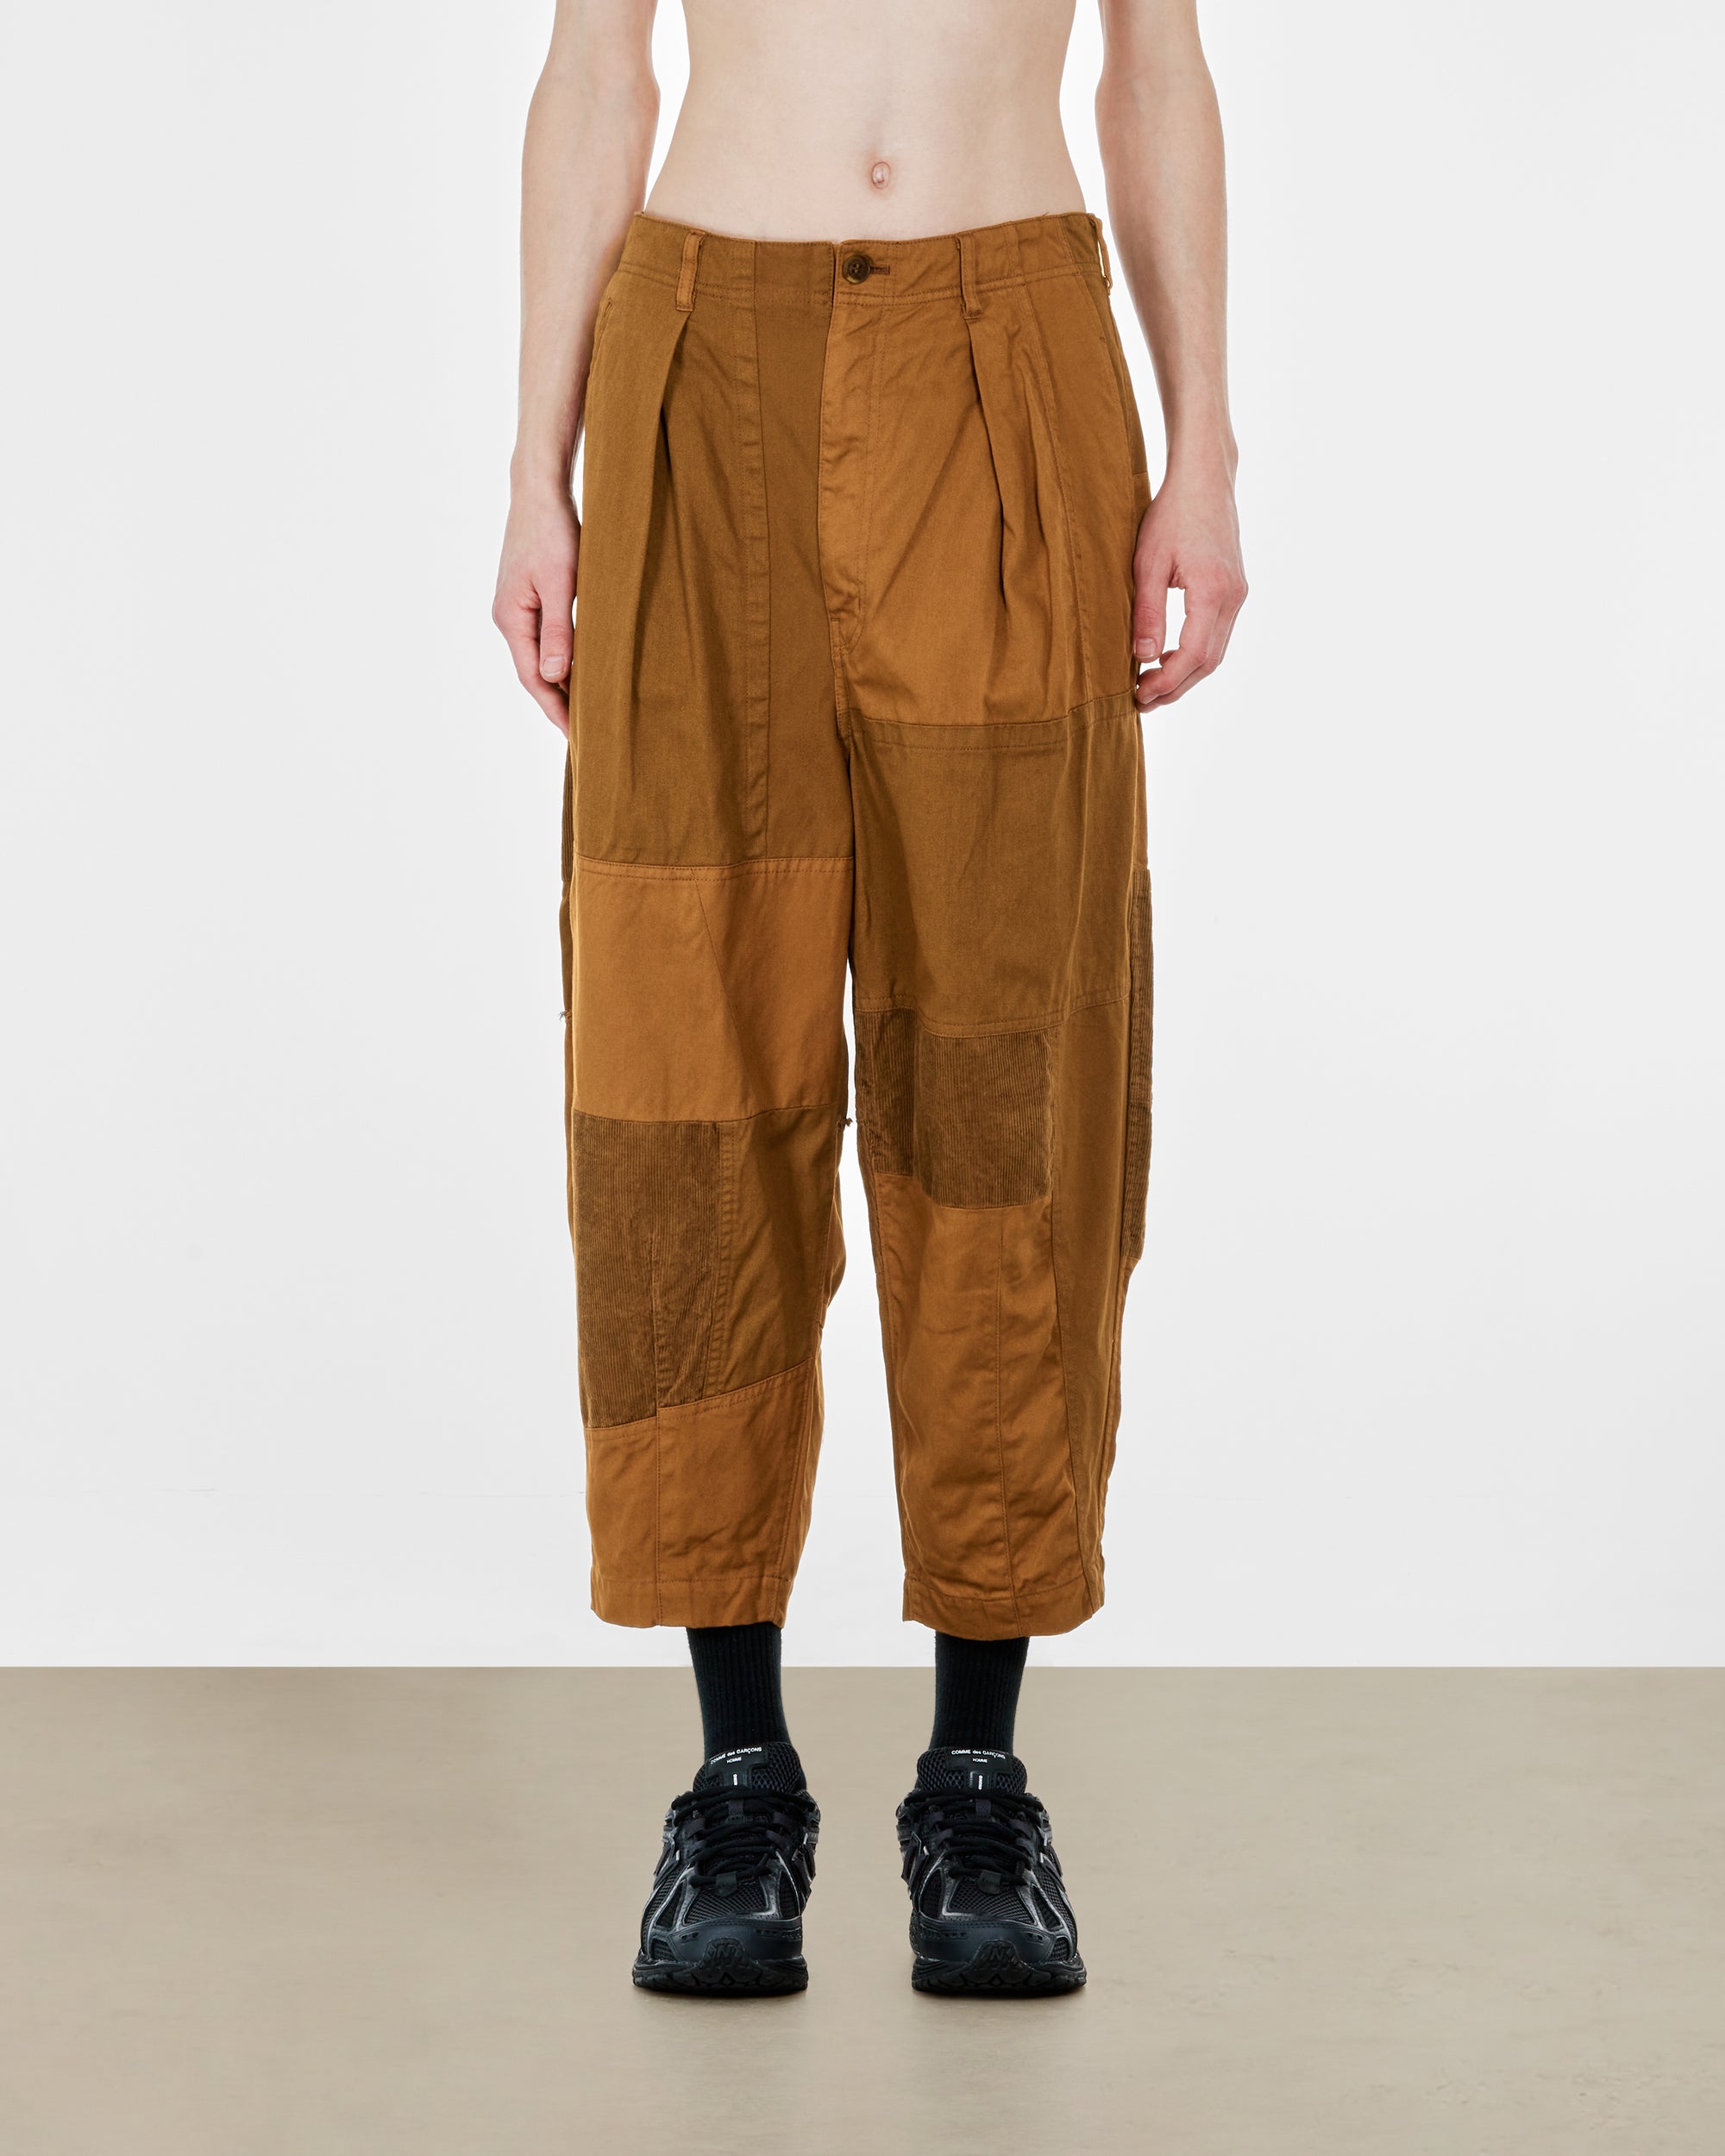 Comme des Garçons Homme - Men's Multi Fabric Pants - (Brown) view 2